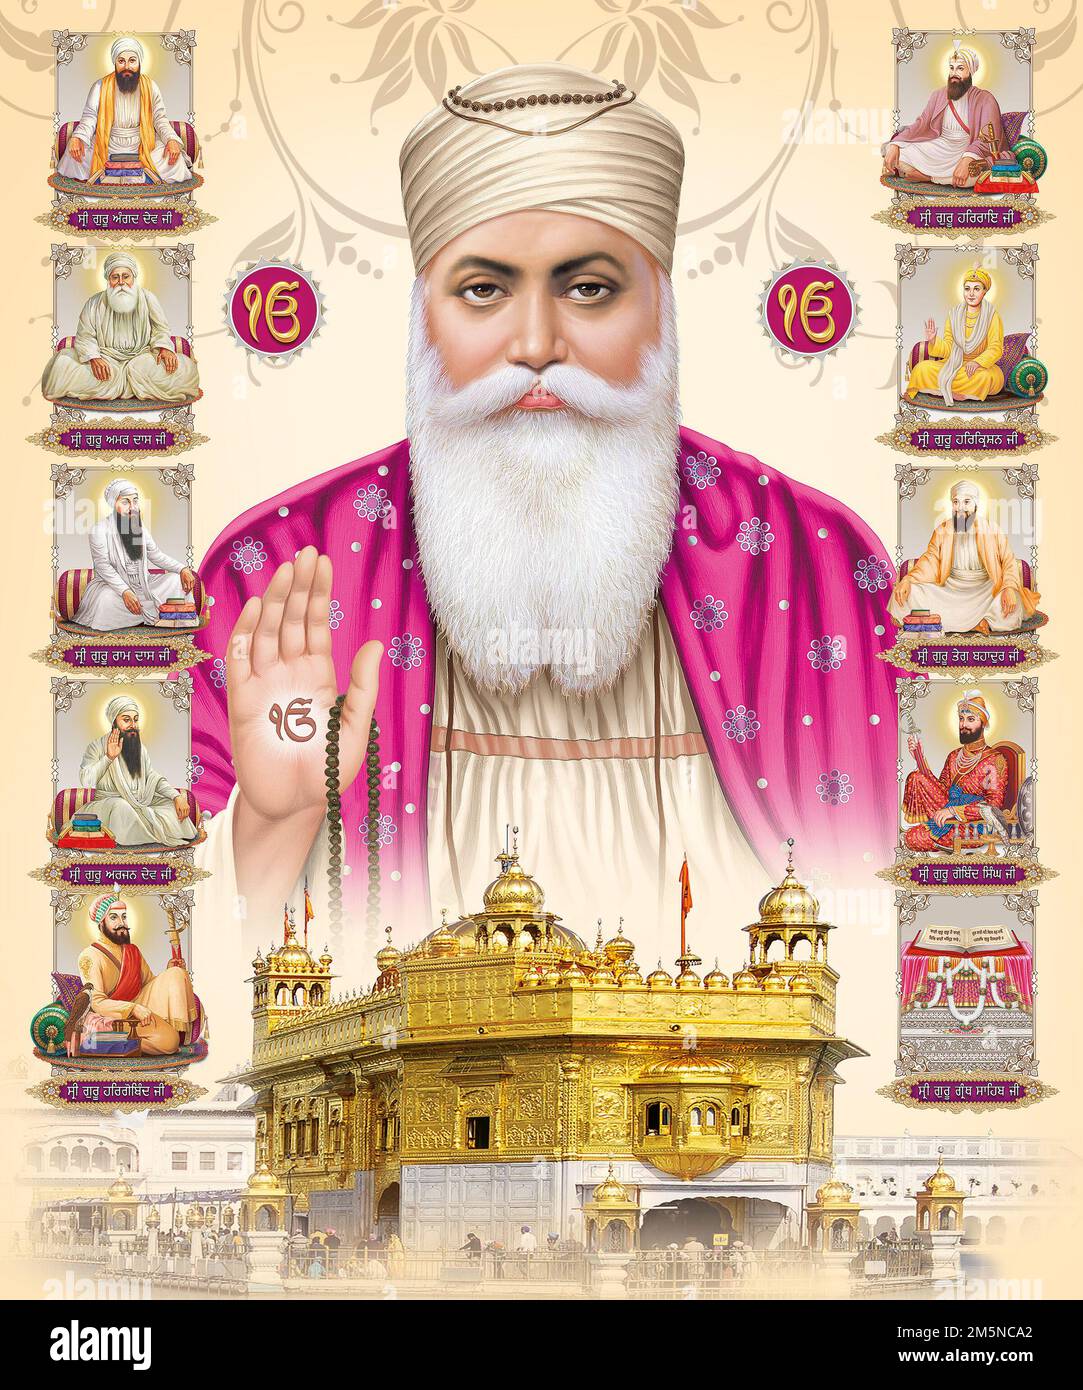 Dus Guru Sikhism Guru Nanak Golden Temple Stock Photo - Alamy